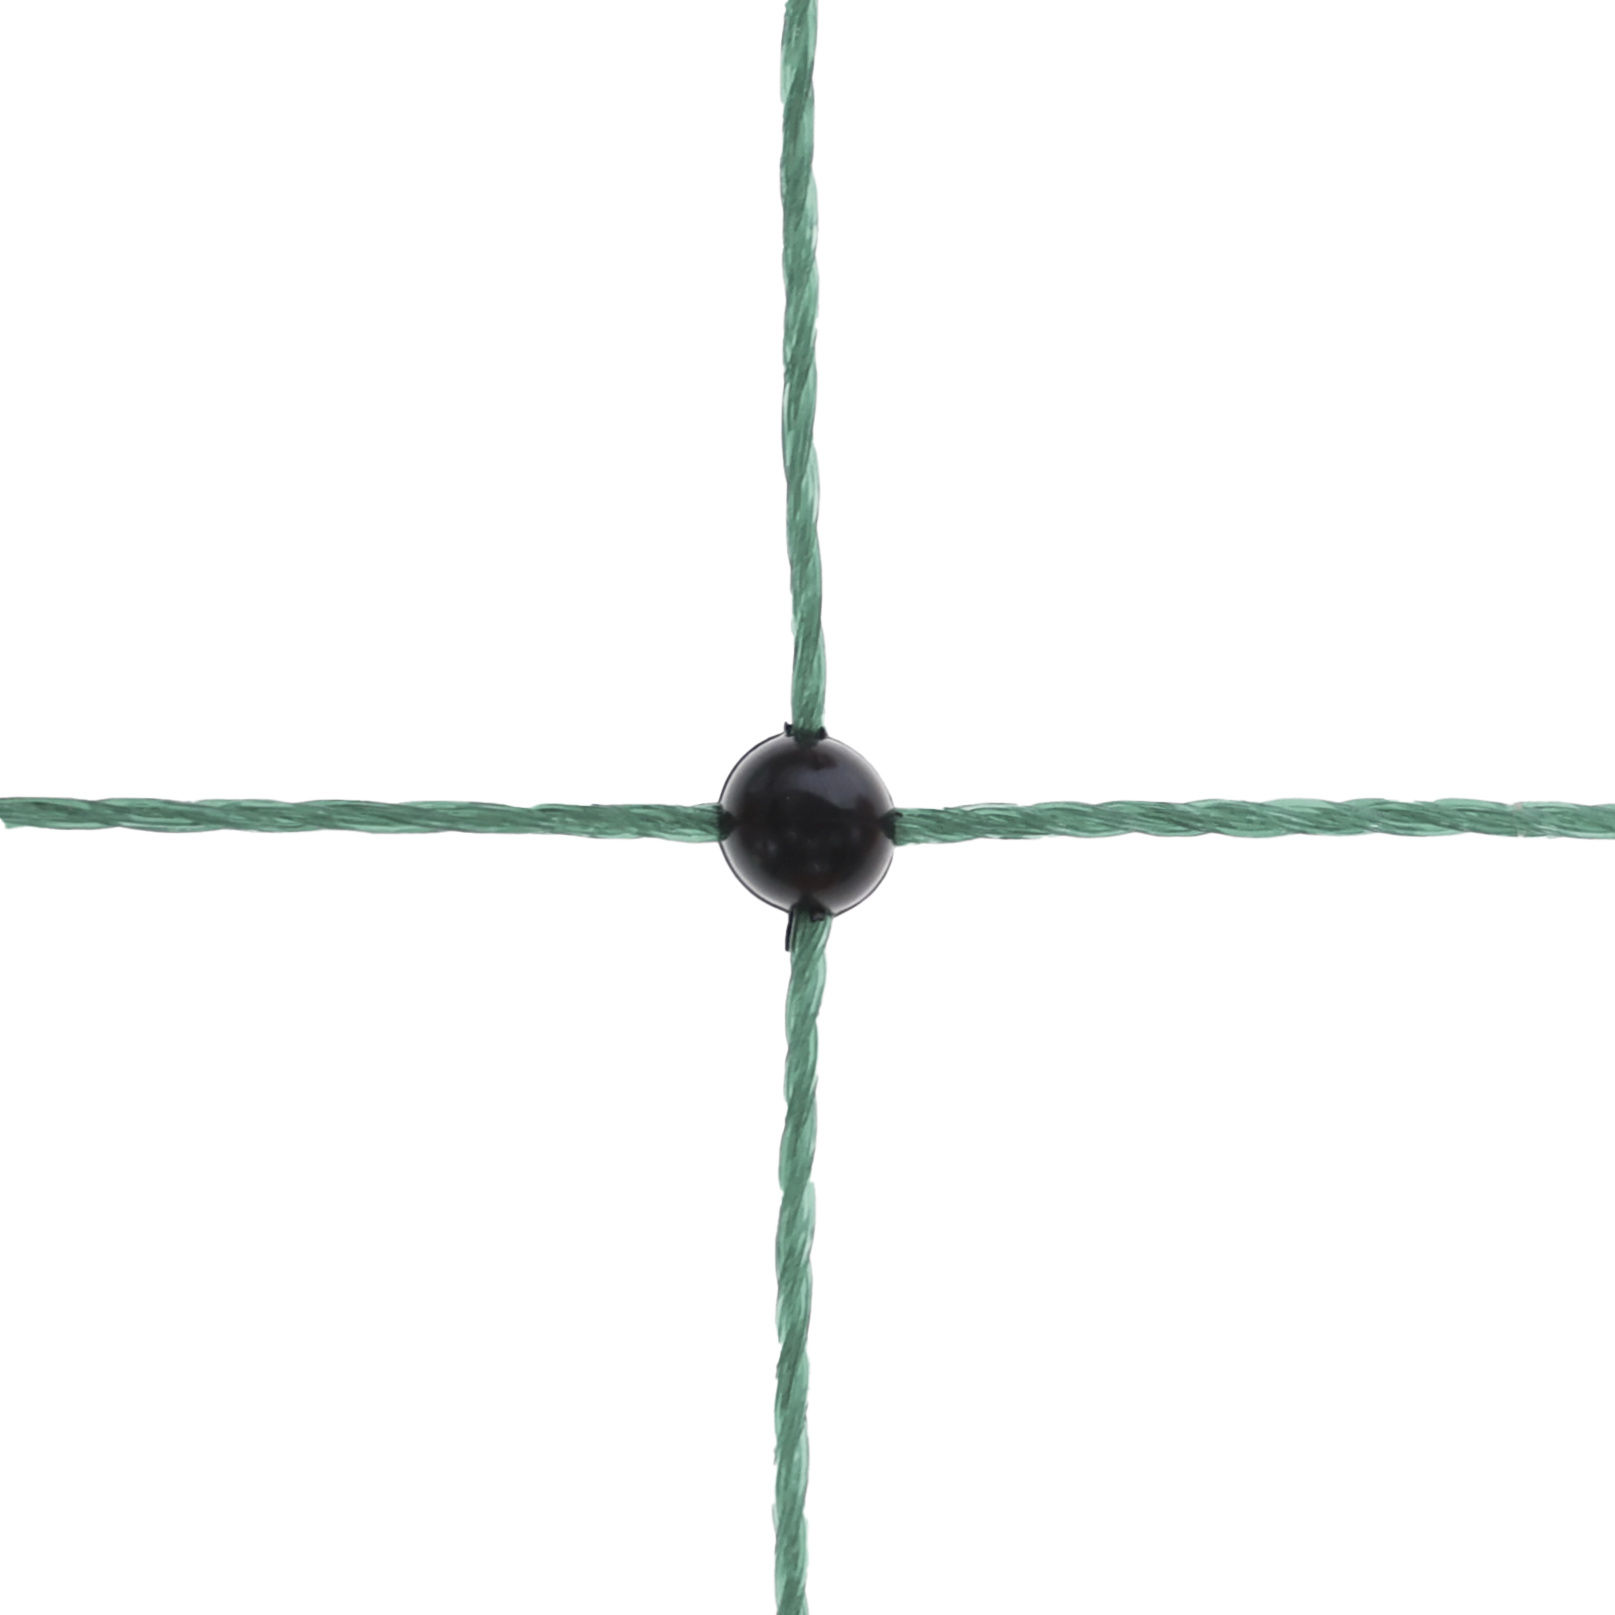 Kaninchennetz 50mtr, 65cm Doppelspitze, grün